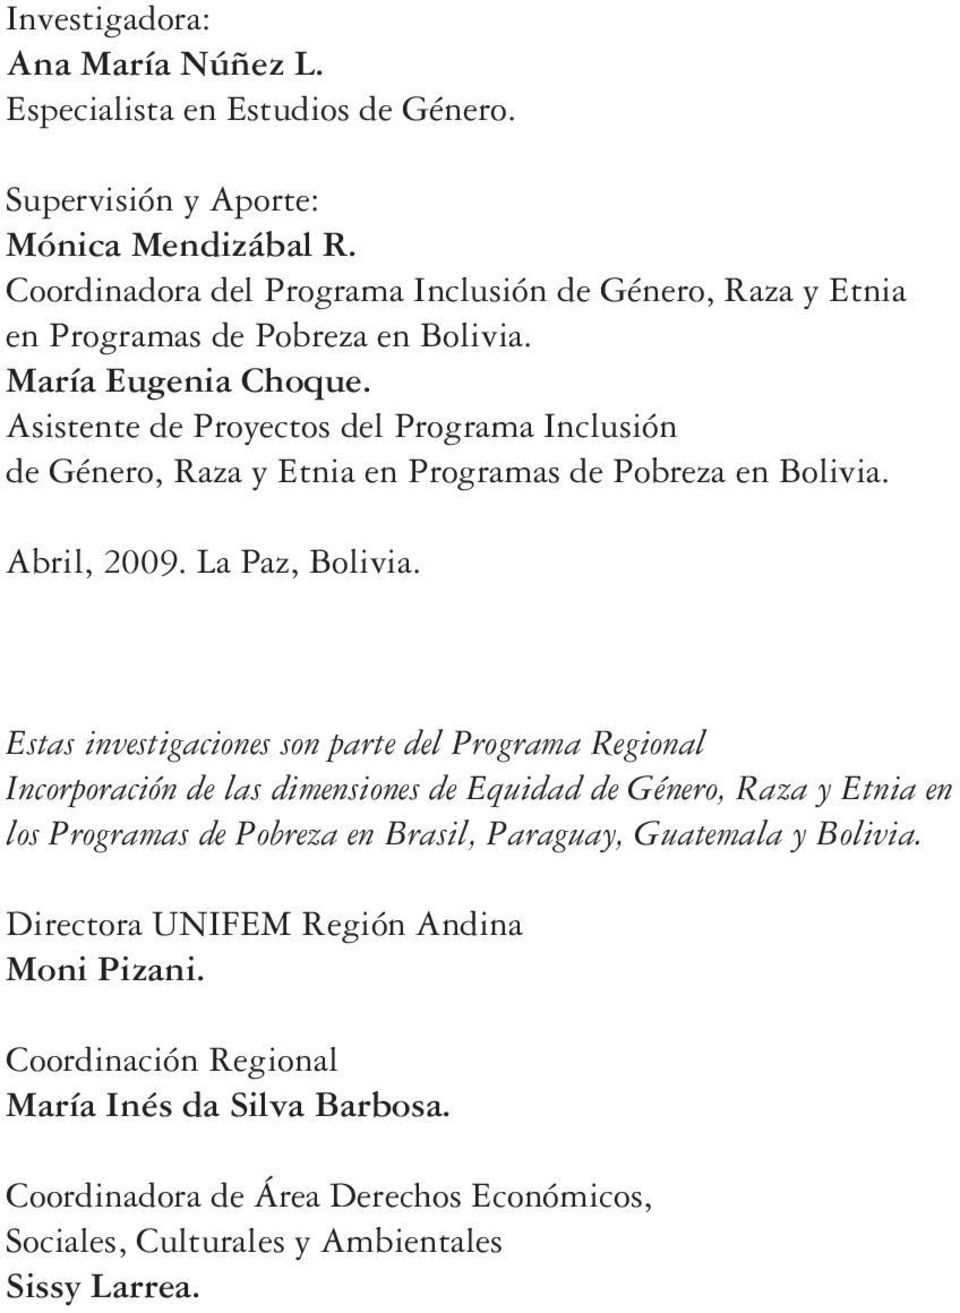 Asistente de Proyectos del Programa Inclusión de Género, Raza y Etnia en Programas de Pobreza en Bolivia. Abril, 2009. La Paz, Bolivia.